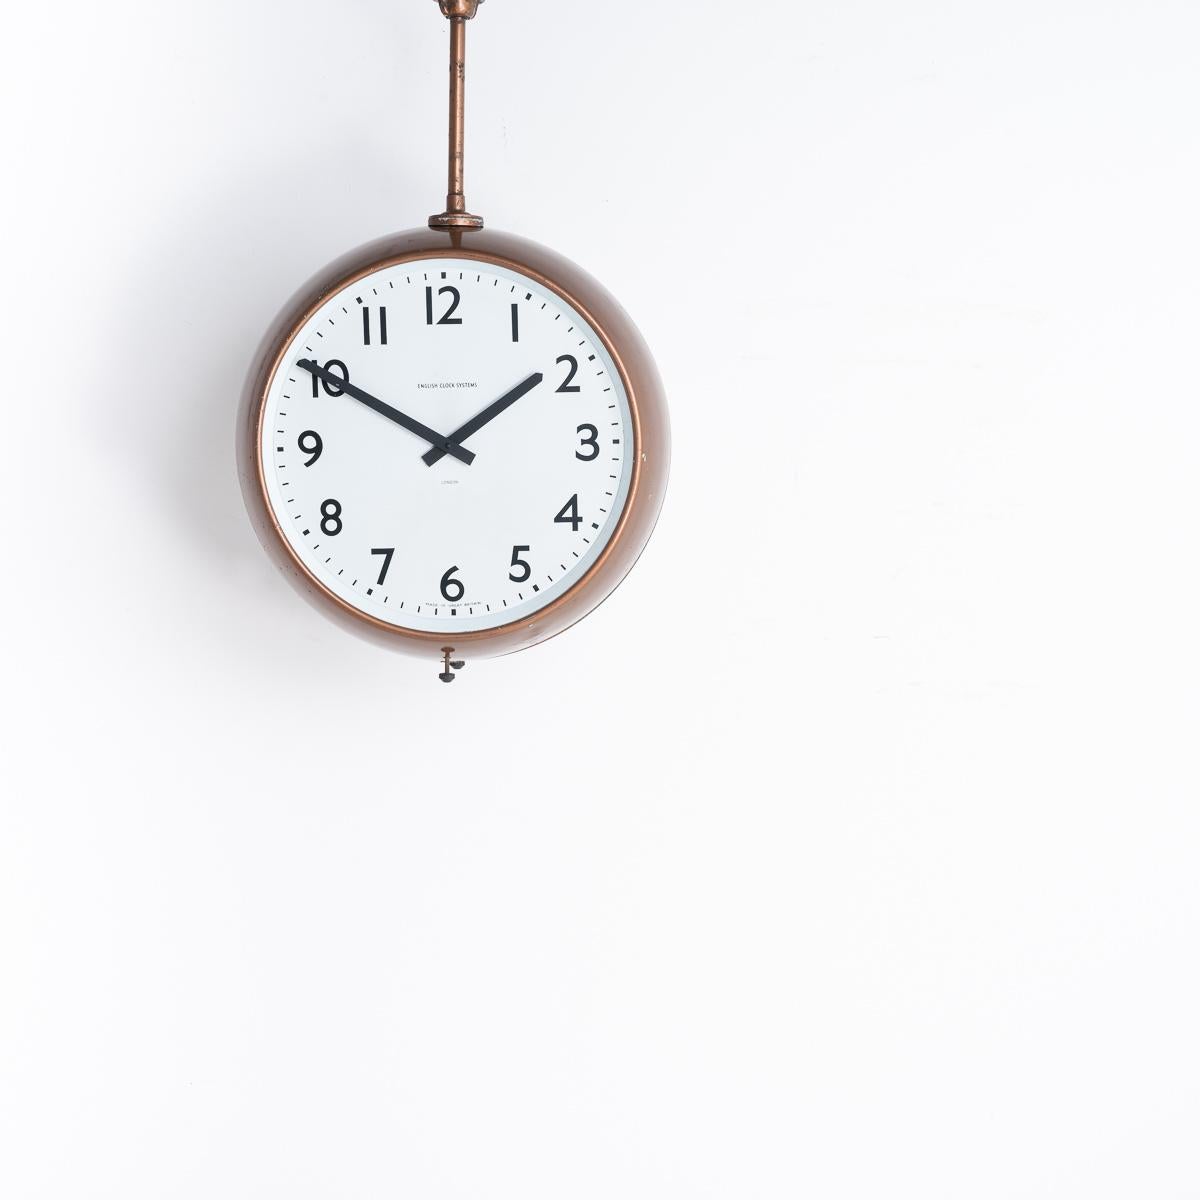 DOPPELSEITIGE UHR AUS DER FABRIK

Eine originale doppelseitige Fabrikuhr, die aus der Westons Cider Factory in Herefordshire zurückgewonnen wurde.

Hergestellt von English Clock Systems Ltd in London, England, um 1960.

Die ursprüngliche